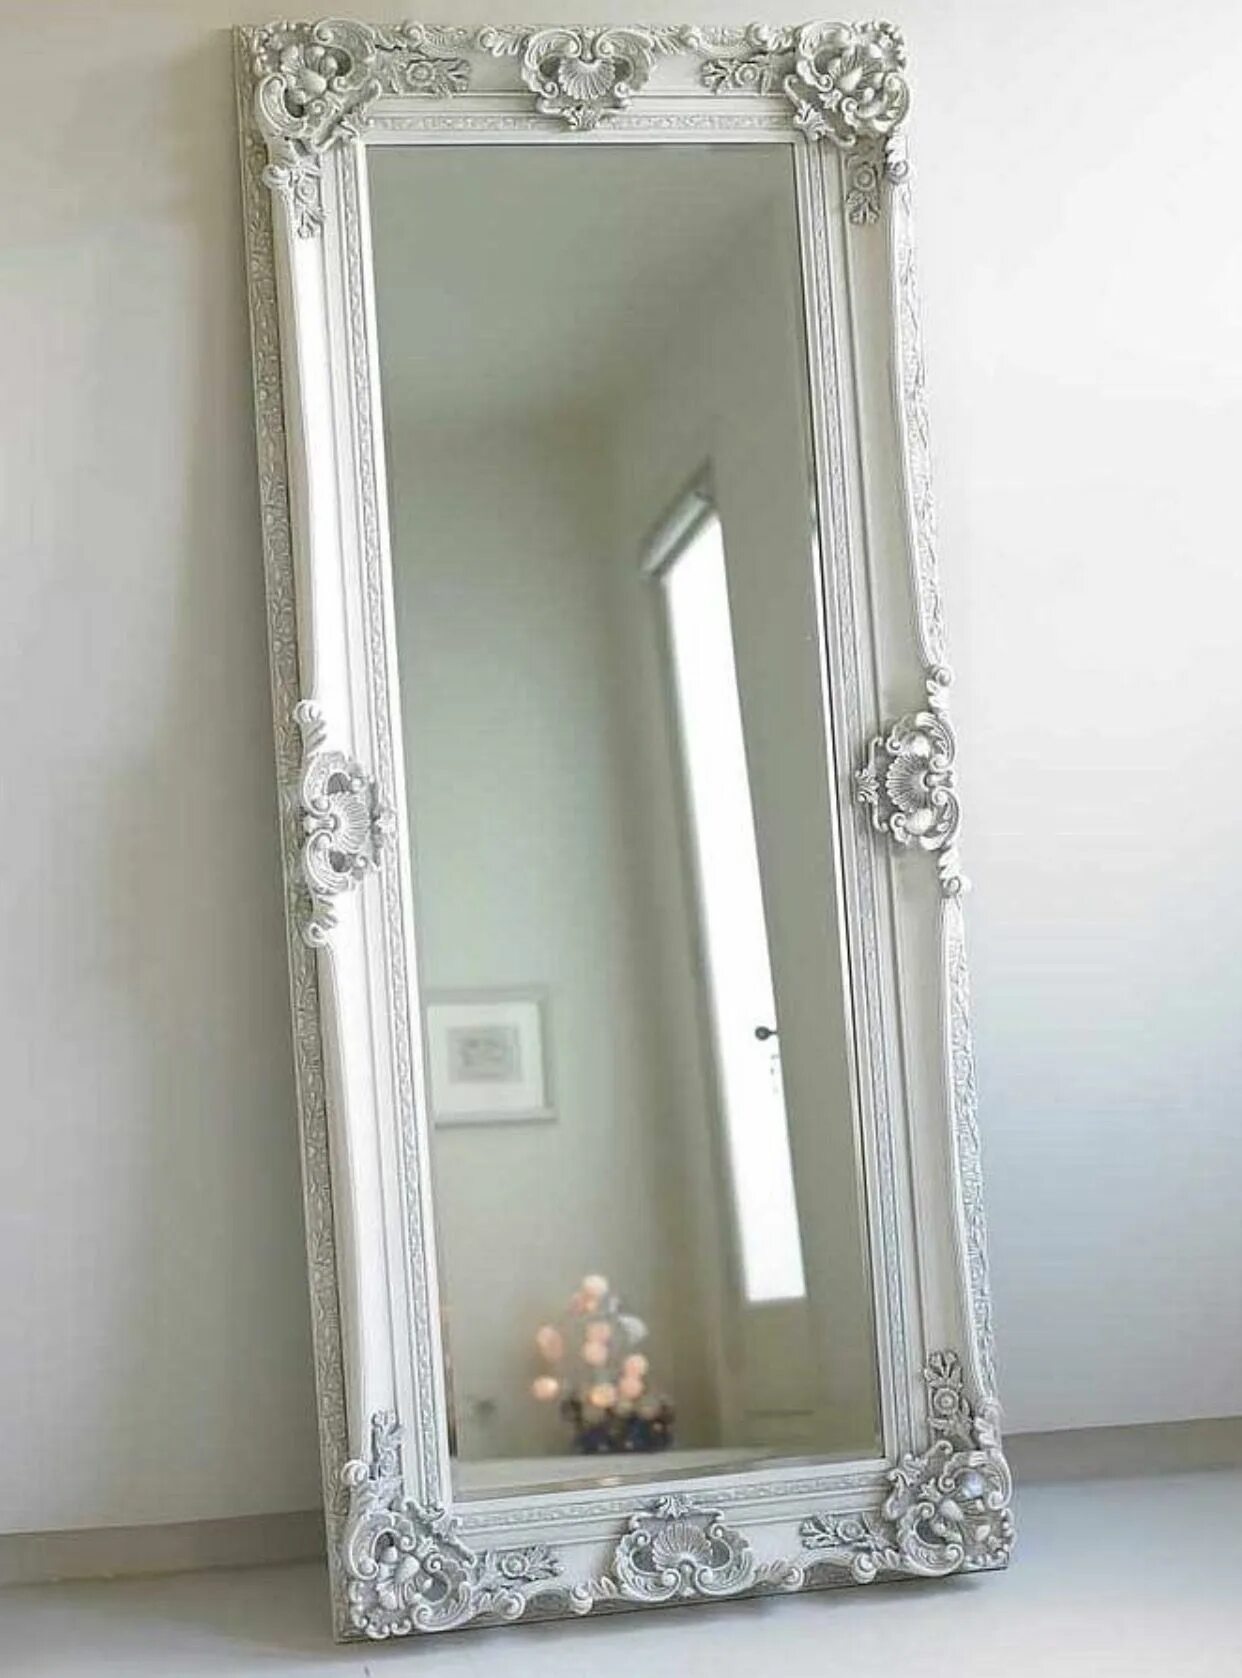 Напольное зеркало Лоренцо Soho Silver. Напольное зеркало Венето Florentine Silver/19. Рамка для зеркала. Зеркало настенное в раме. Зеркала серые купить